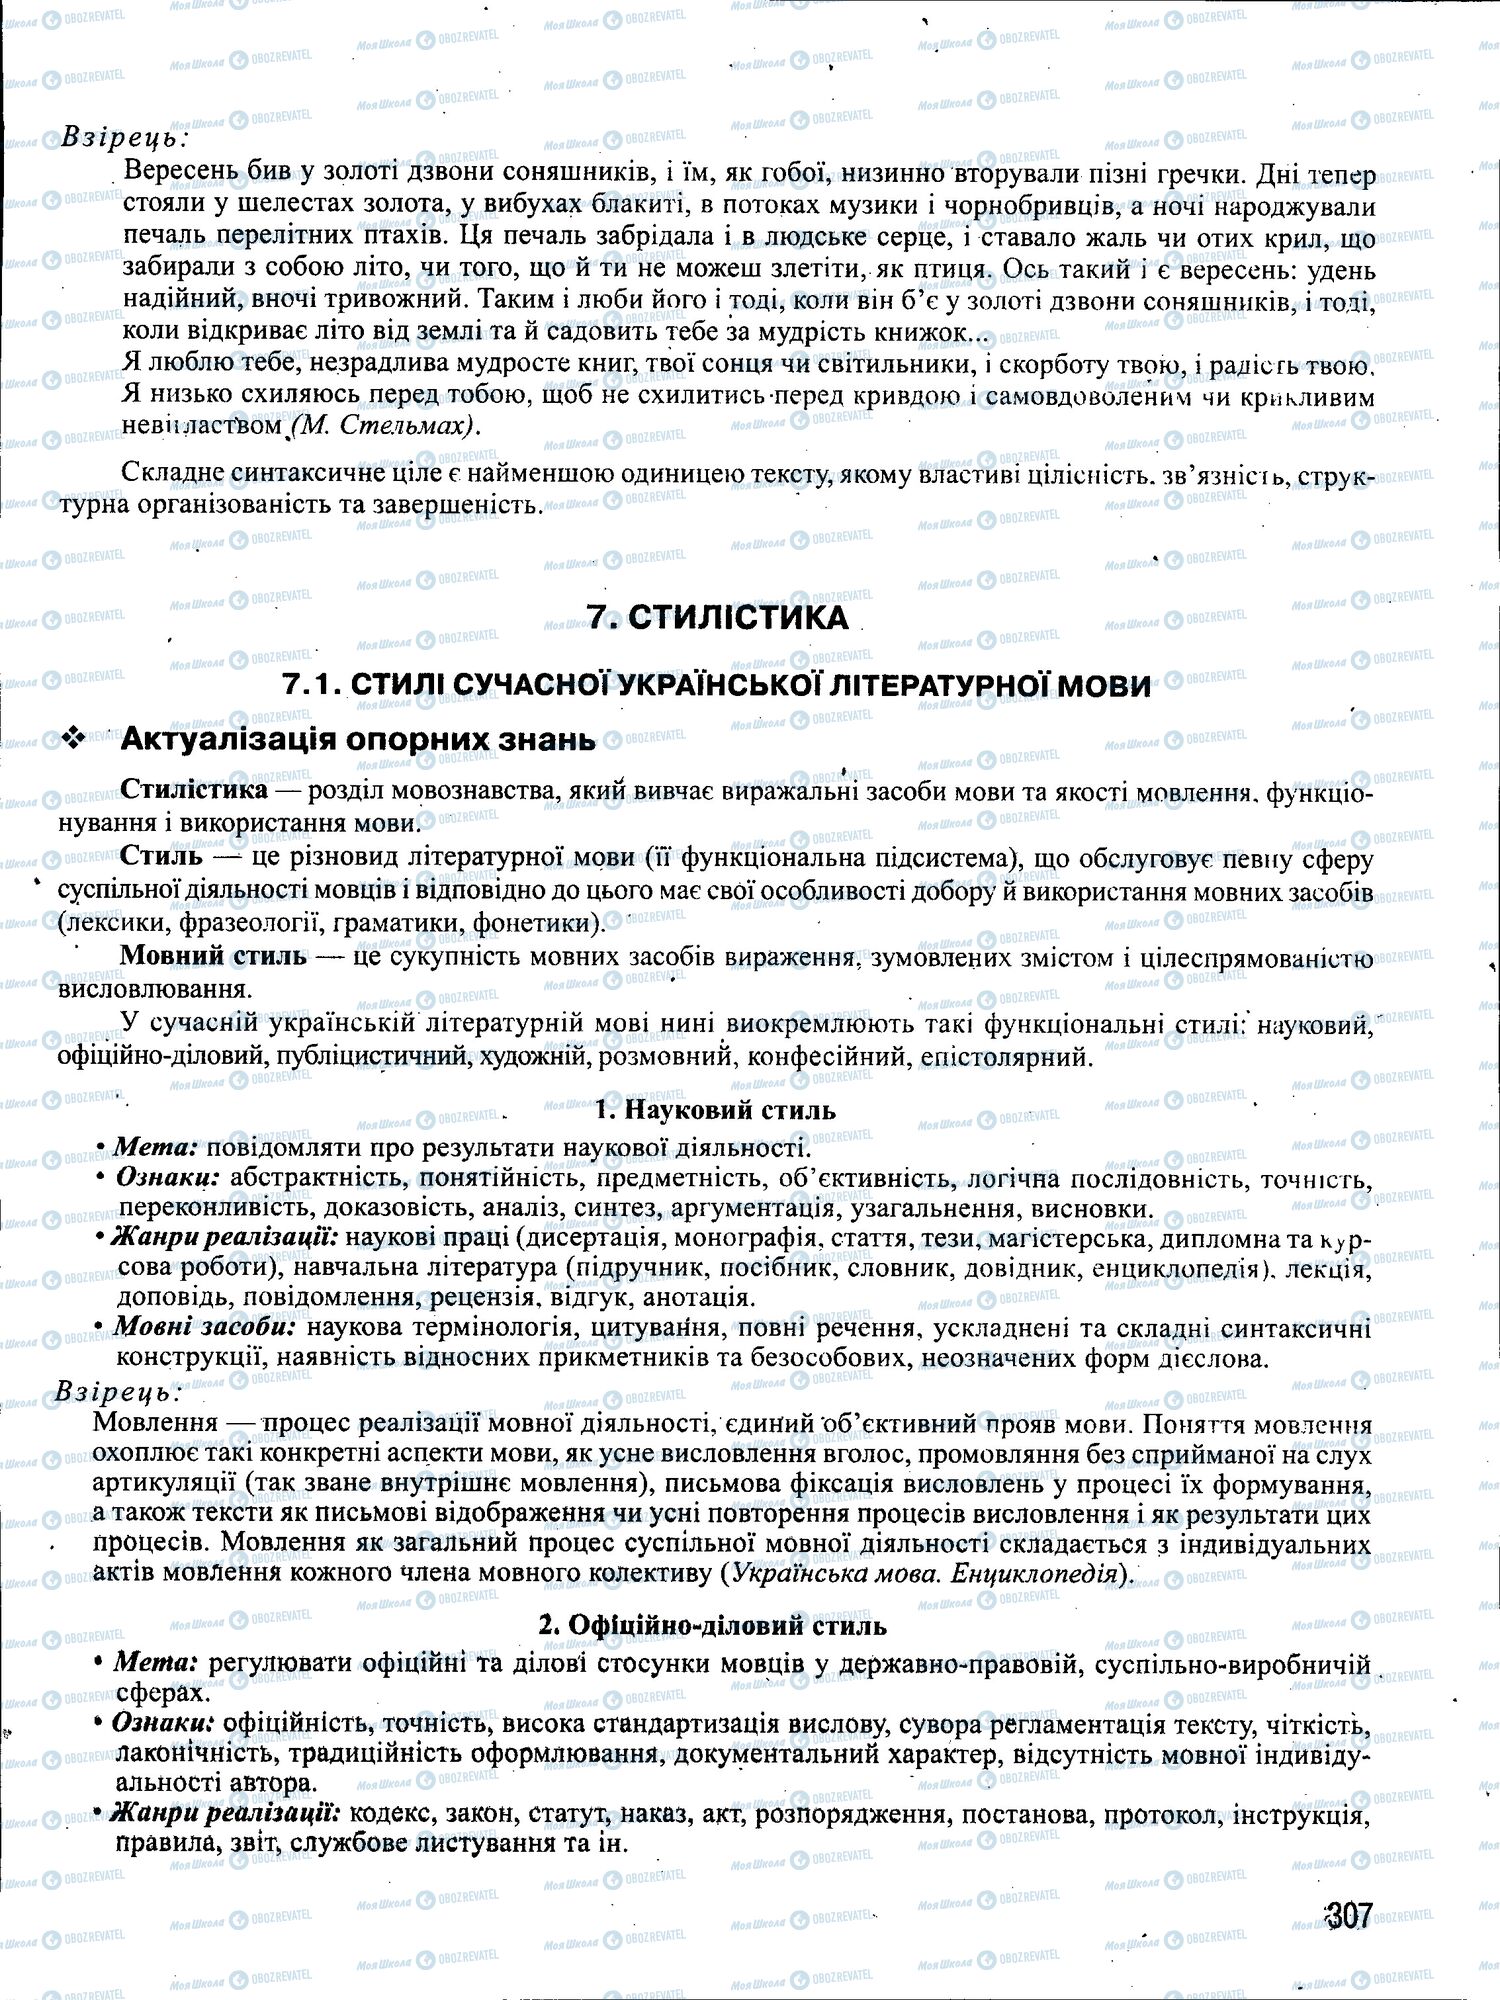 ЗНО Укр мова 11 класс страница 307